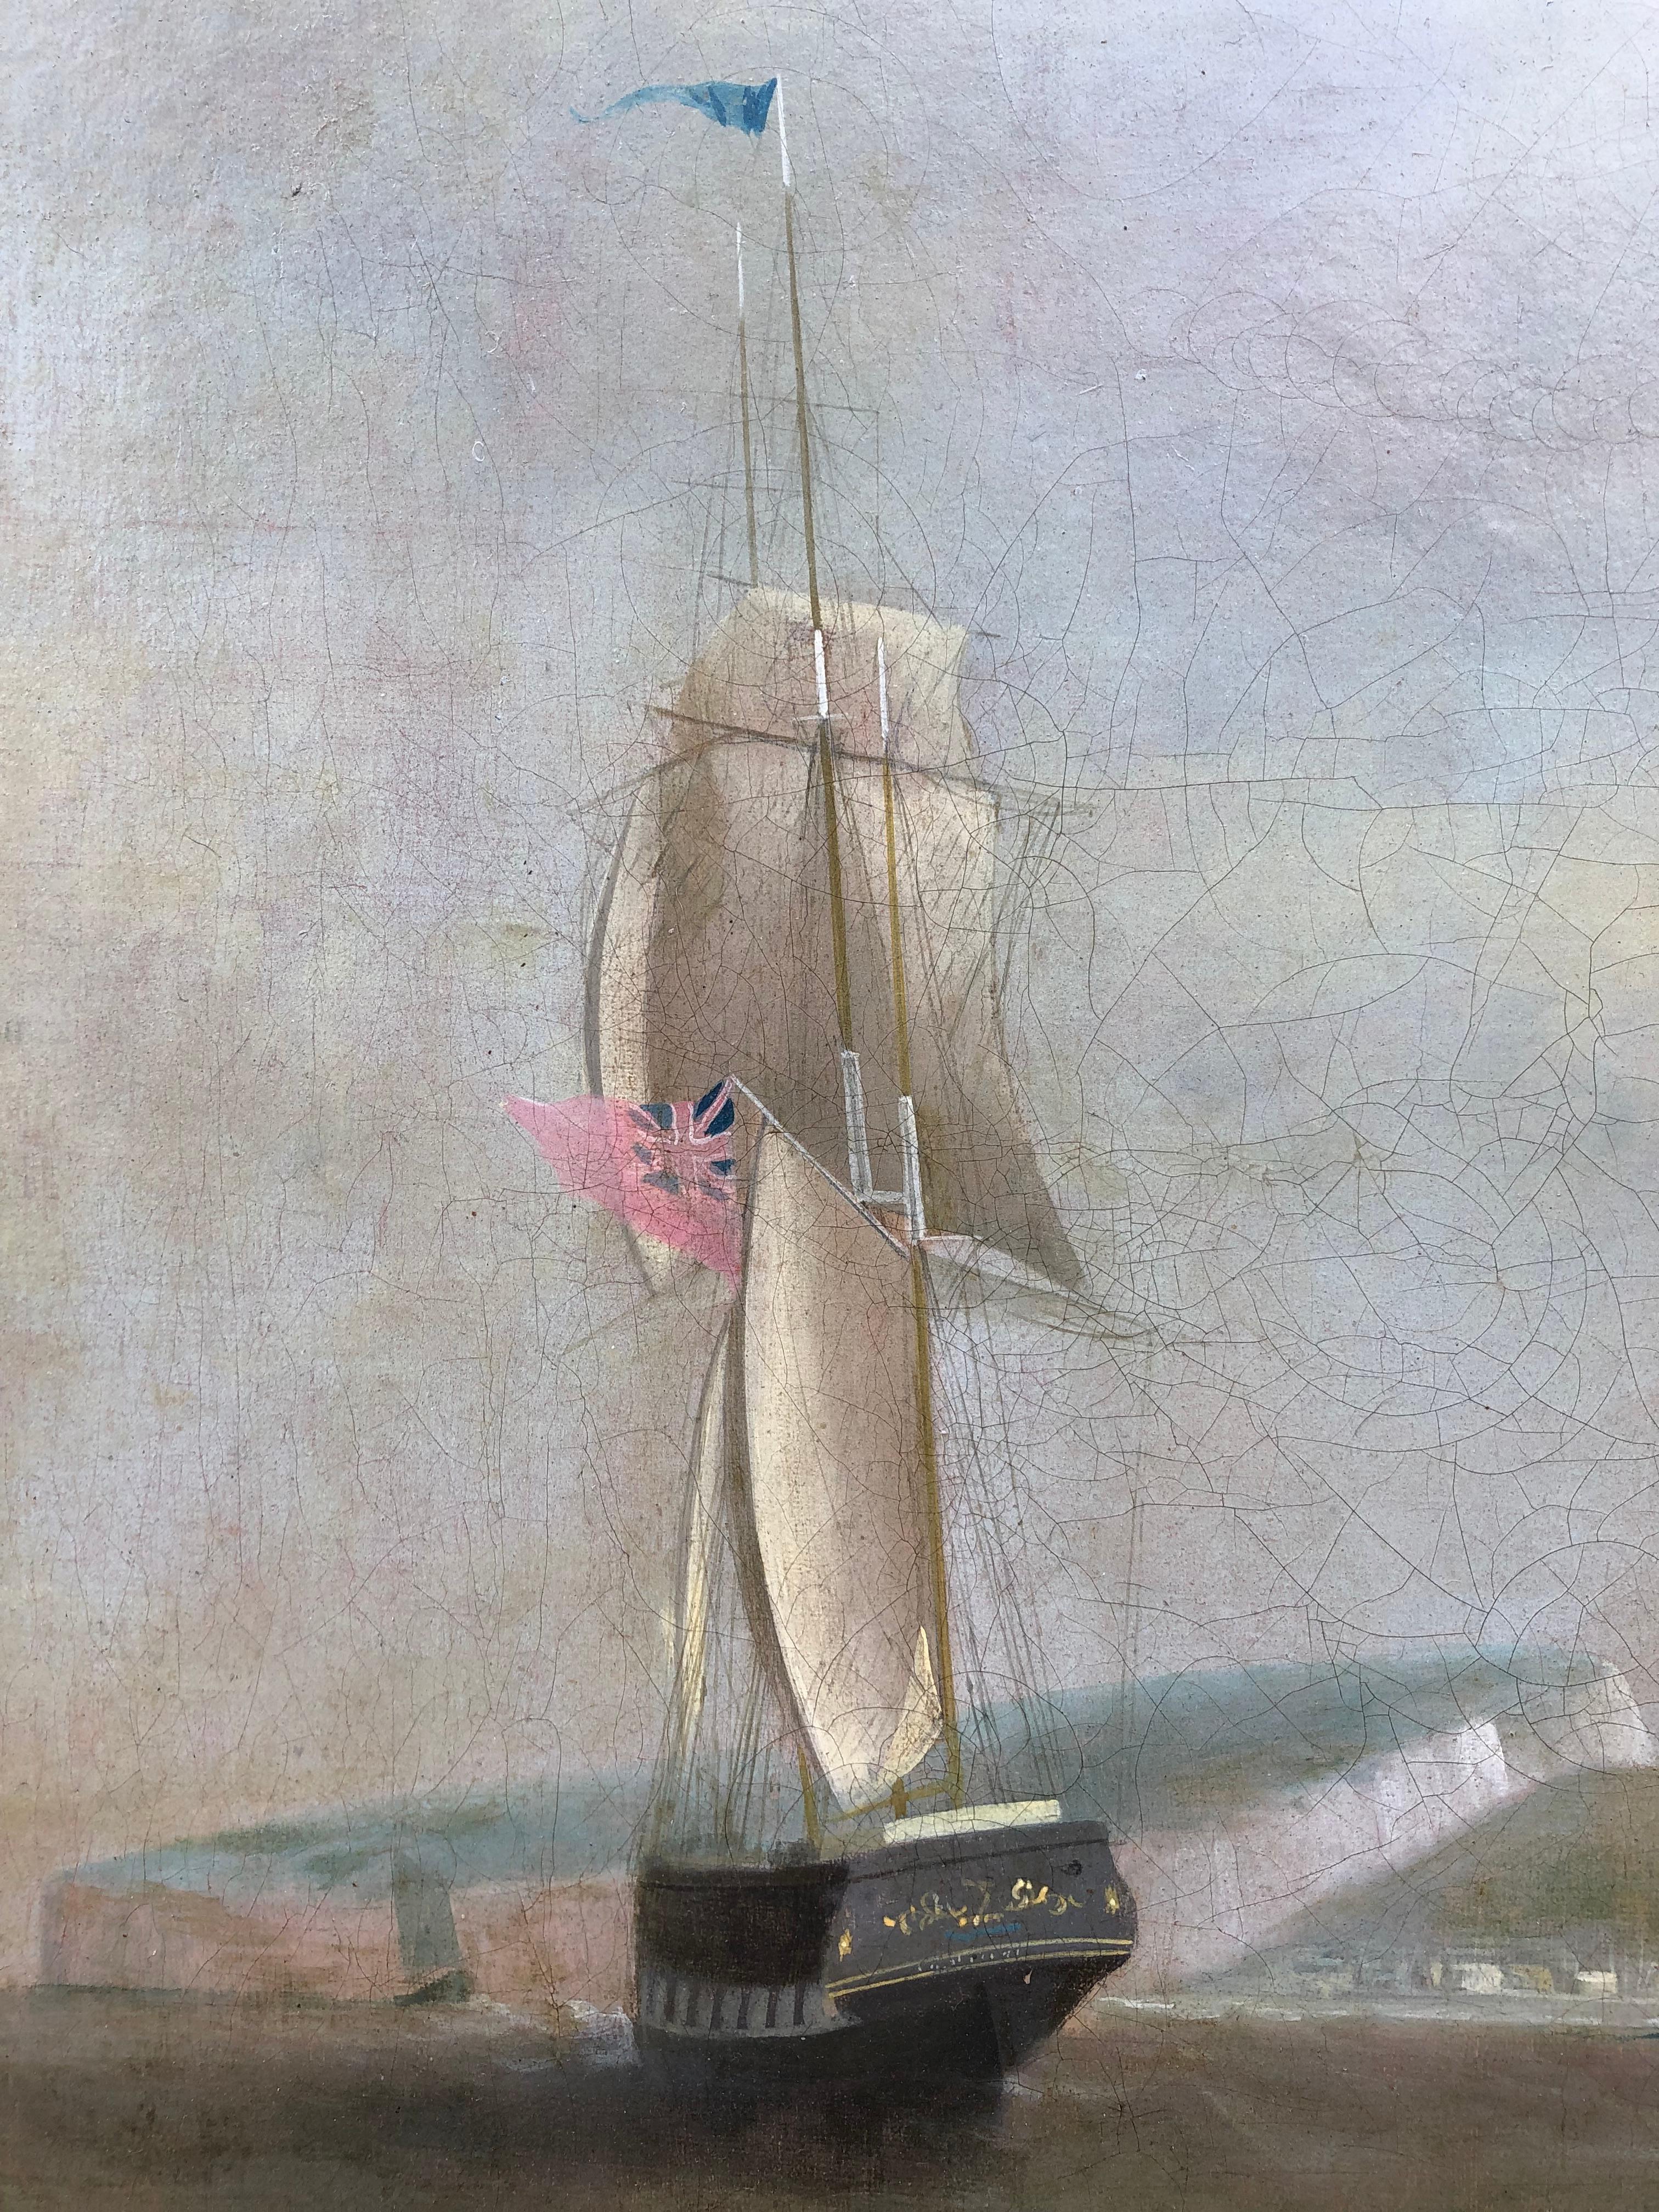 William John Huggins (1781-1845)
Ein Schiff in zwei Positionen vor Dover 
Öl auf Leinwand
Vorzeichenlos
33 x 45 Zoll, inkl. Rahmen

William John Huggins, über dessen Eltern nichts bekannt ist, soll als Seemann bei der East India Company angefangen